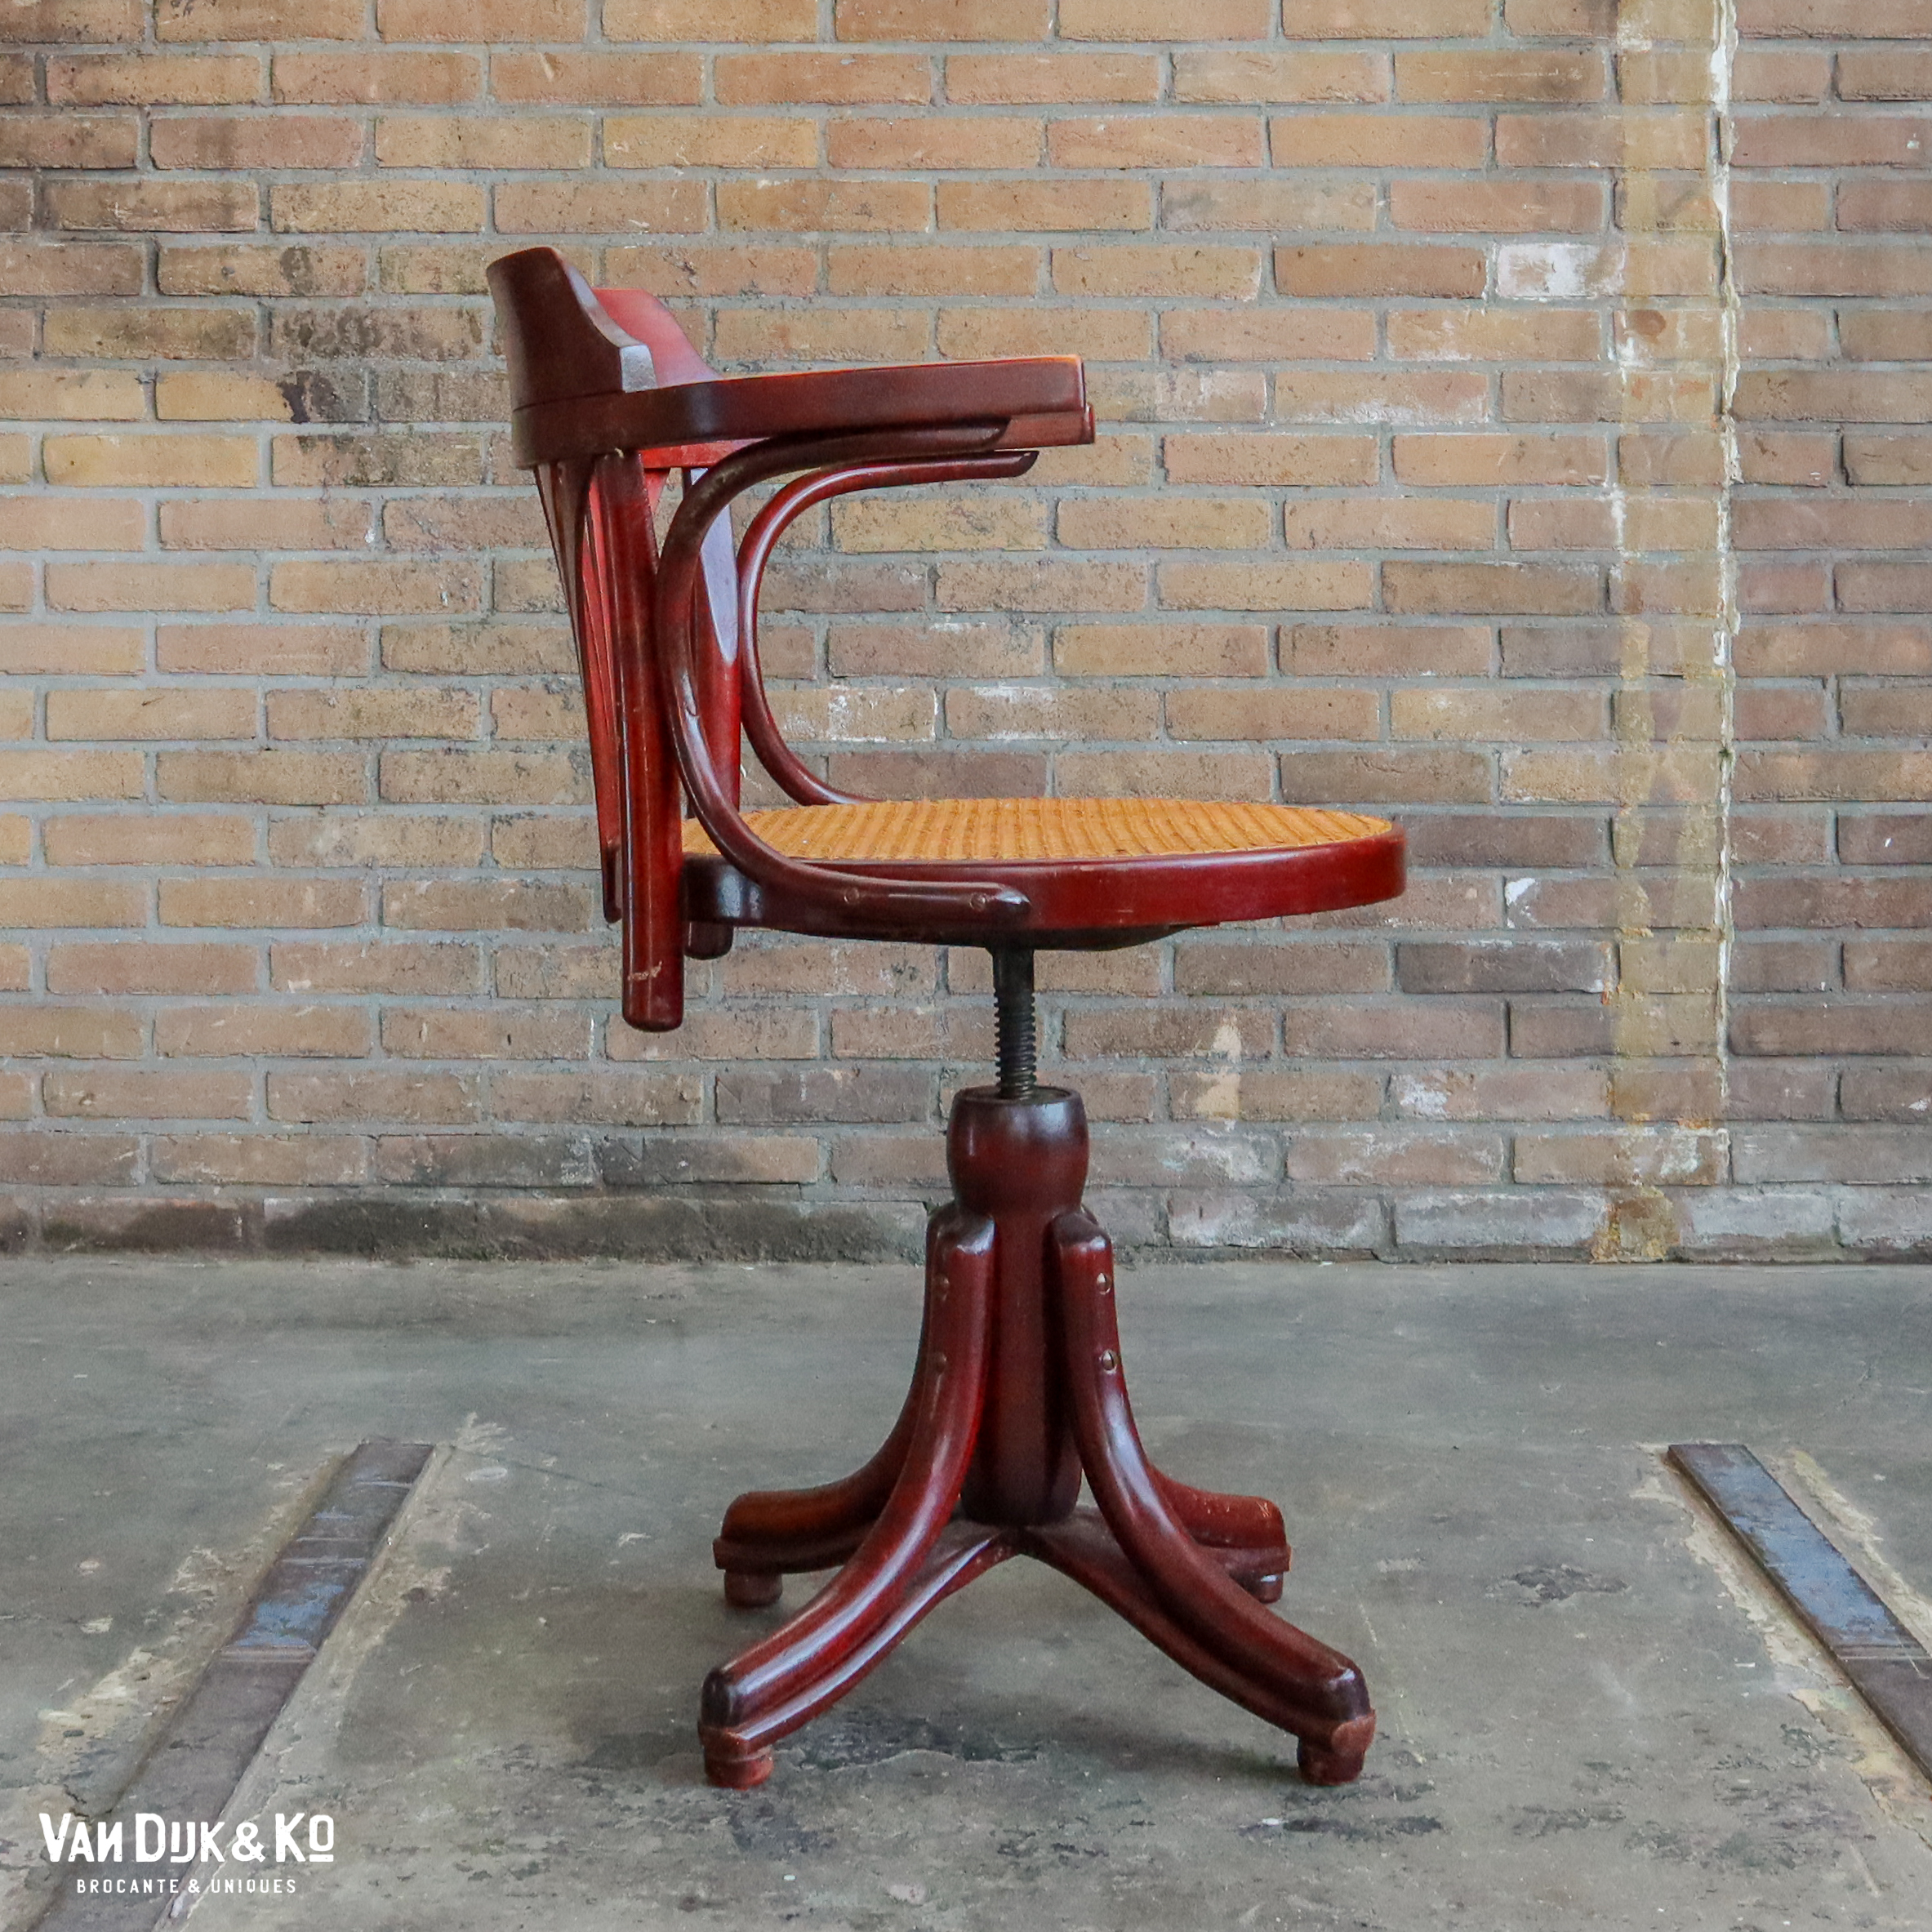 heden aan de andere kant, munitie Vintage bureaustoel » Van Dijk & Ko